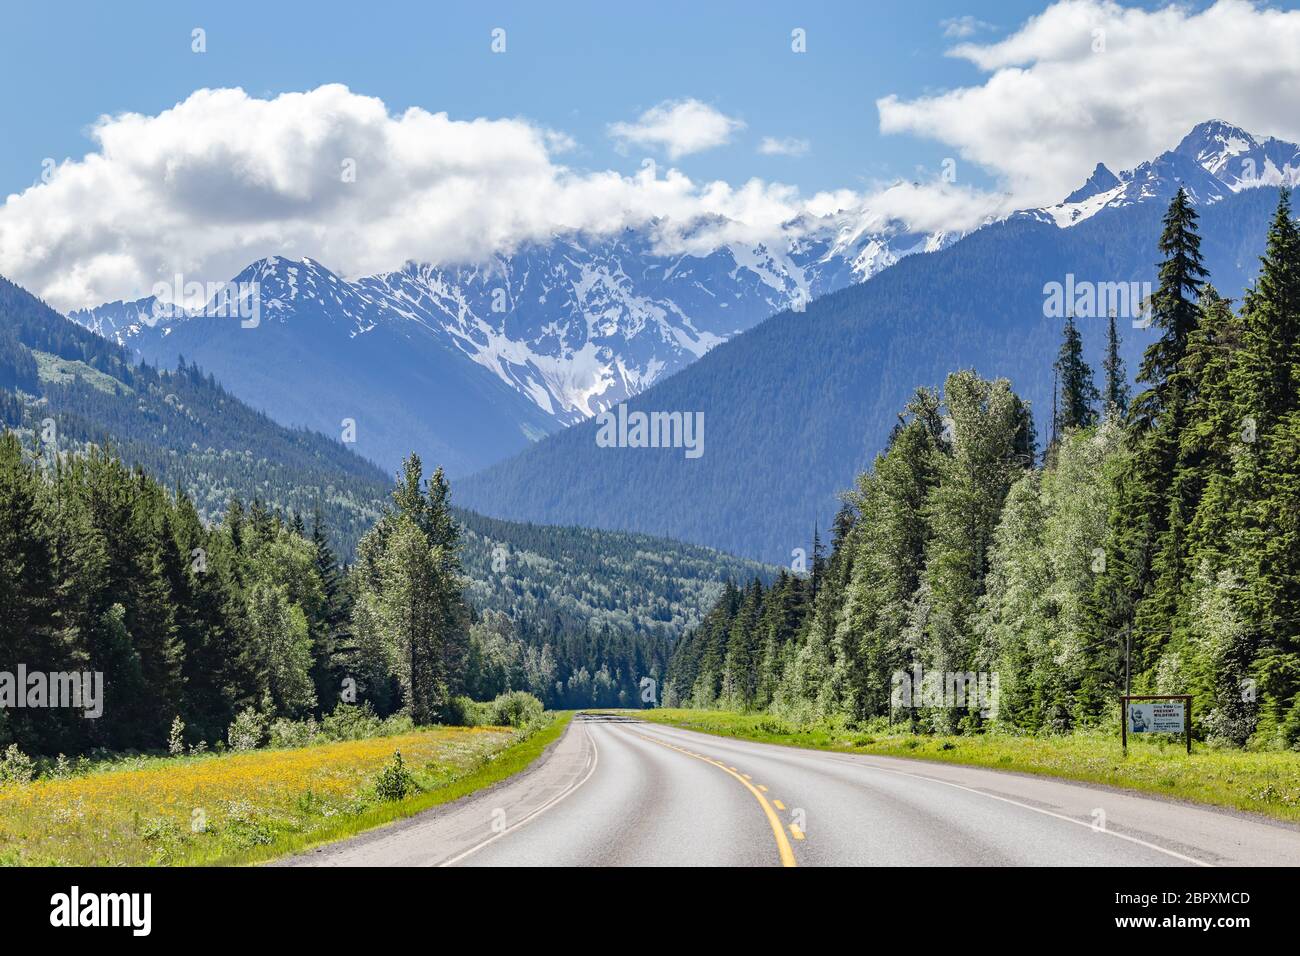 Paisaje escénico de la carretera en Columbia Británica, Canadá Foto de stock